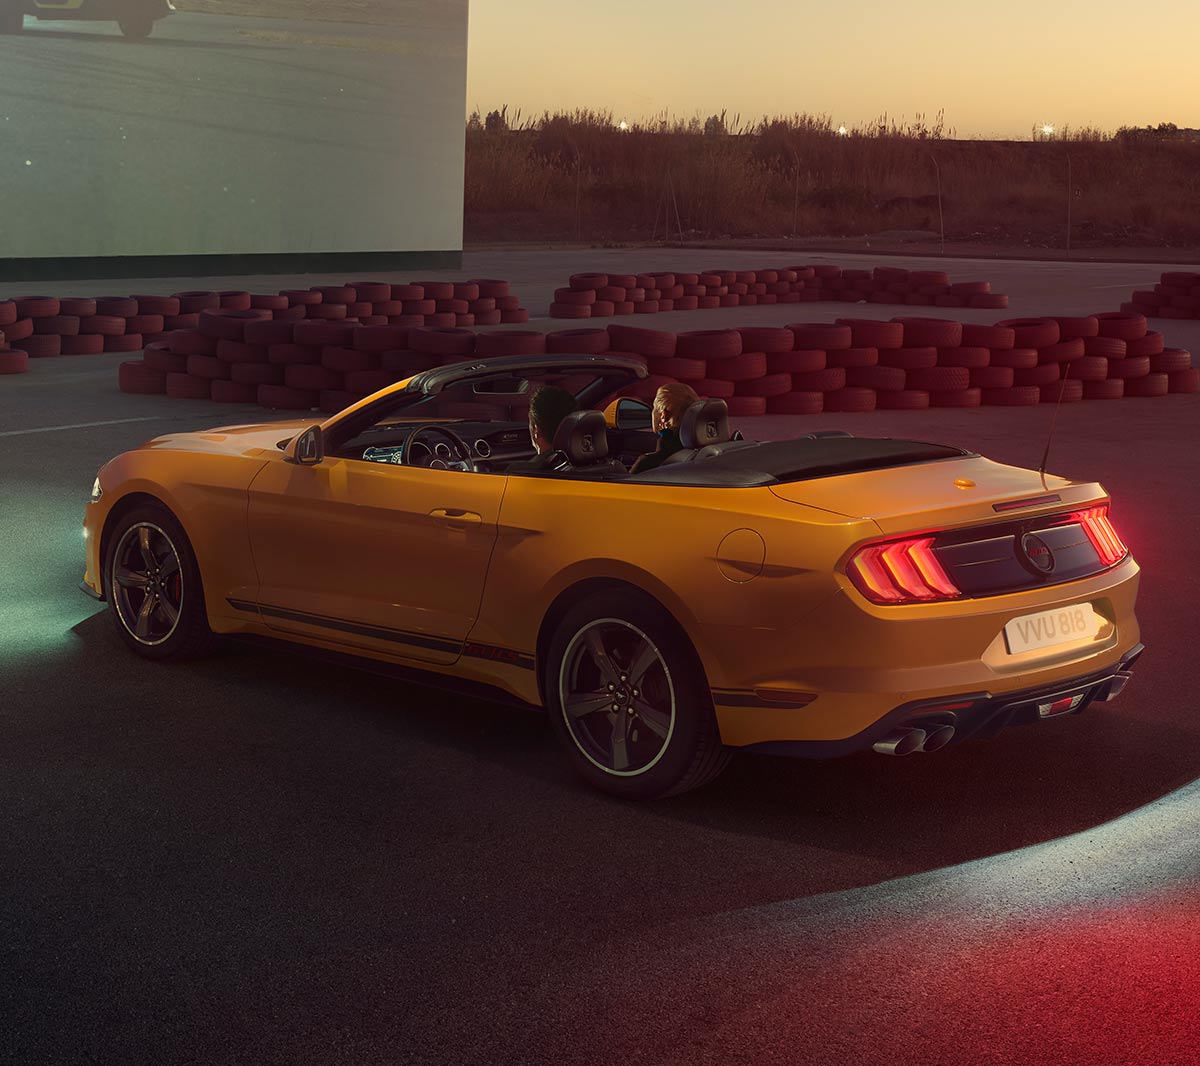 Ford Mustang California couleur orange. Vue arrière aux trois quarts, stationnant devant un bâtiment moderne.